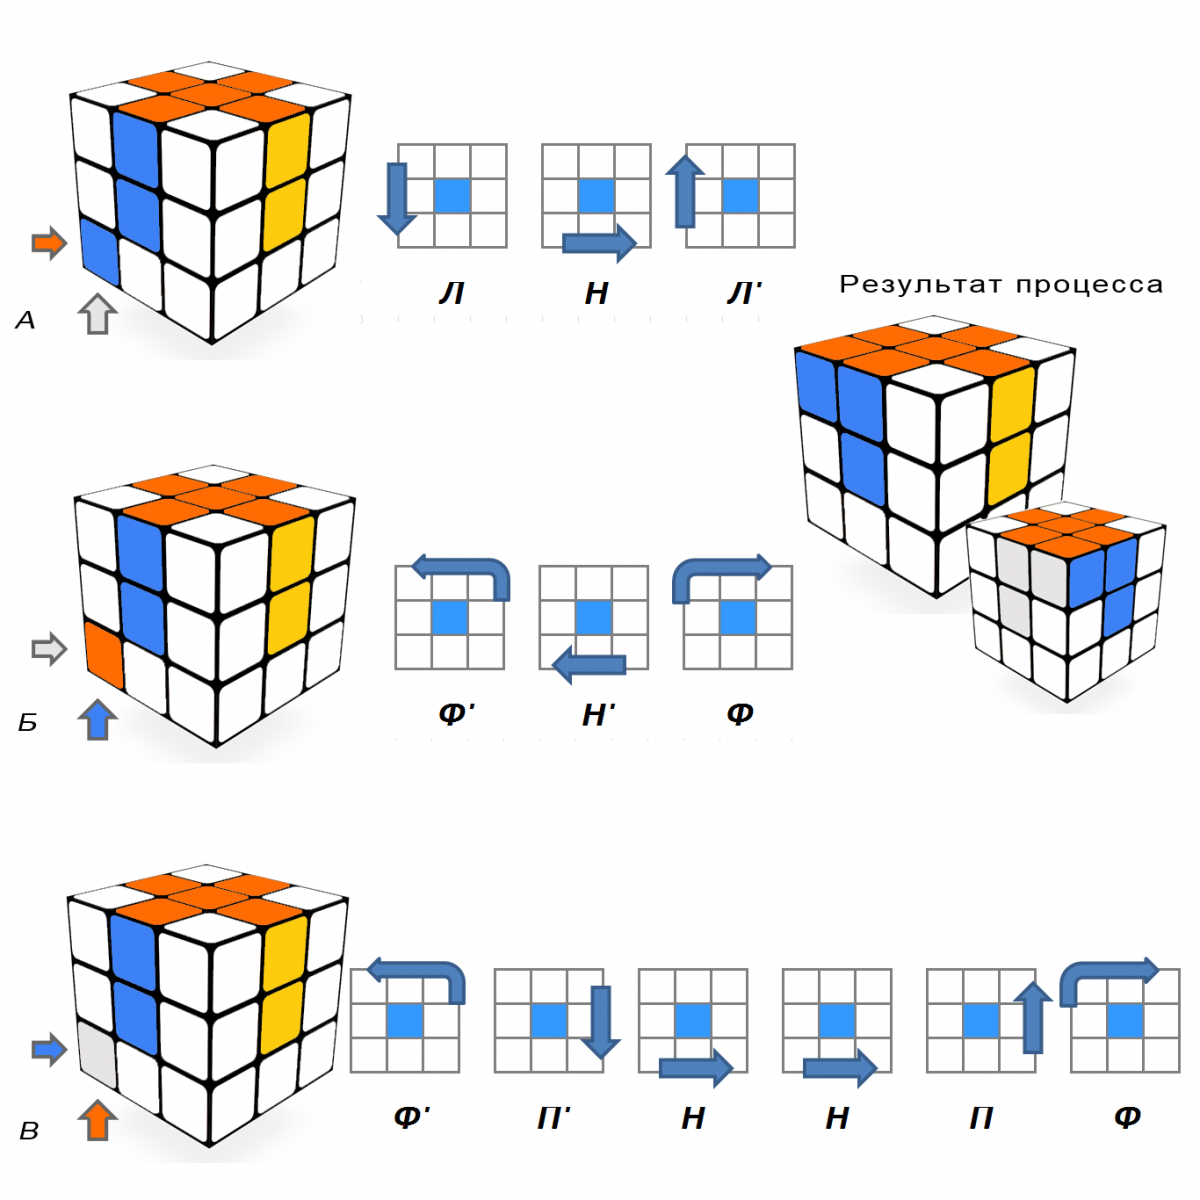 Сборка 3 слоя. Алгоритм кубика Рубика 3х3. Схема сборки кубика Рубика 3х3. Сборка третьего слоя кубика Рубика 3х3. Как собрать кубик Рубика 3 на 3 схема.